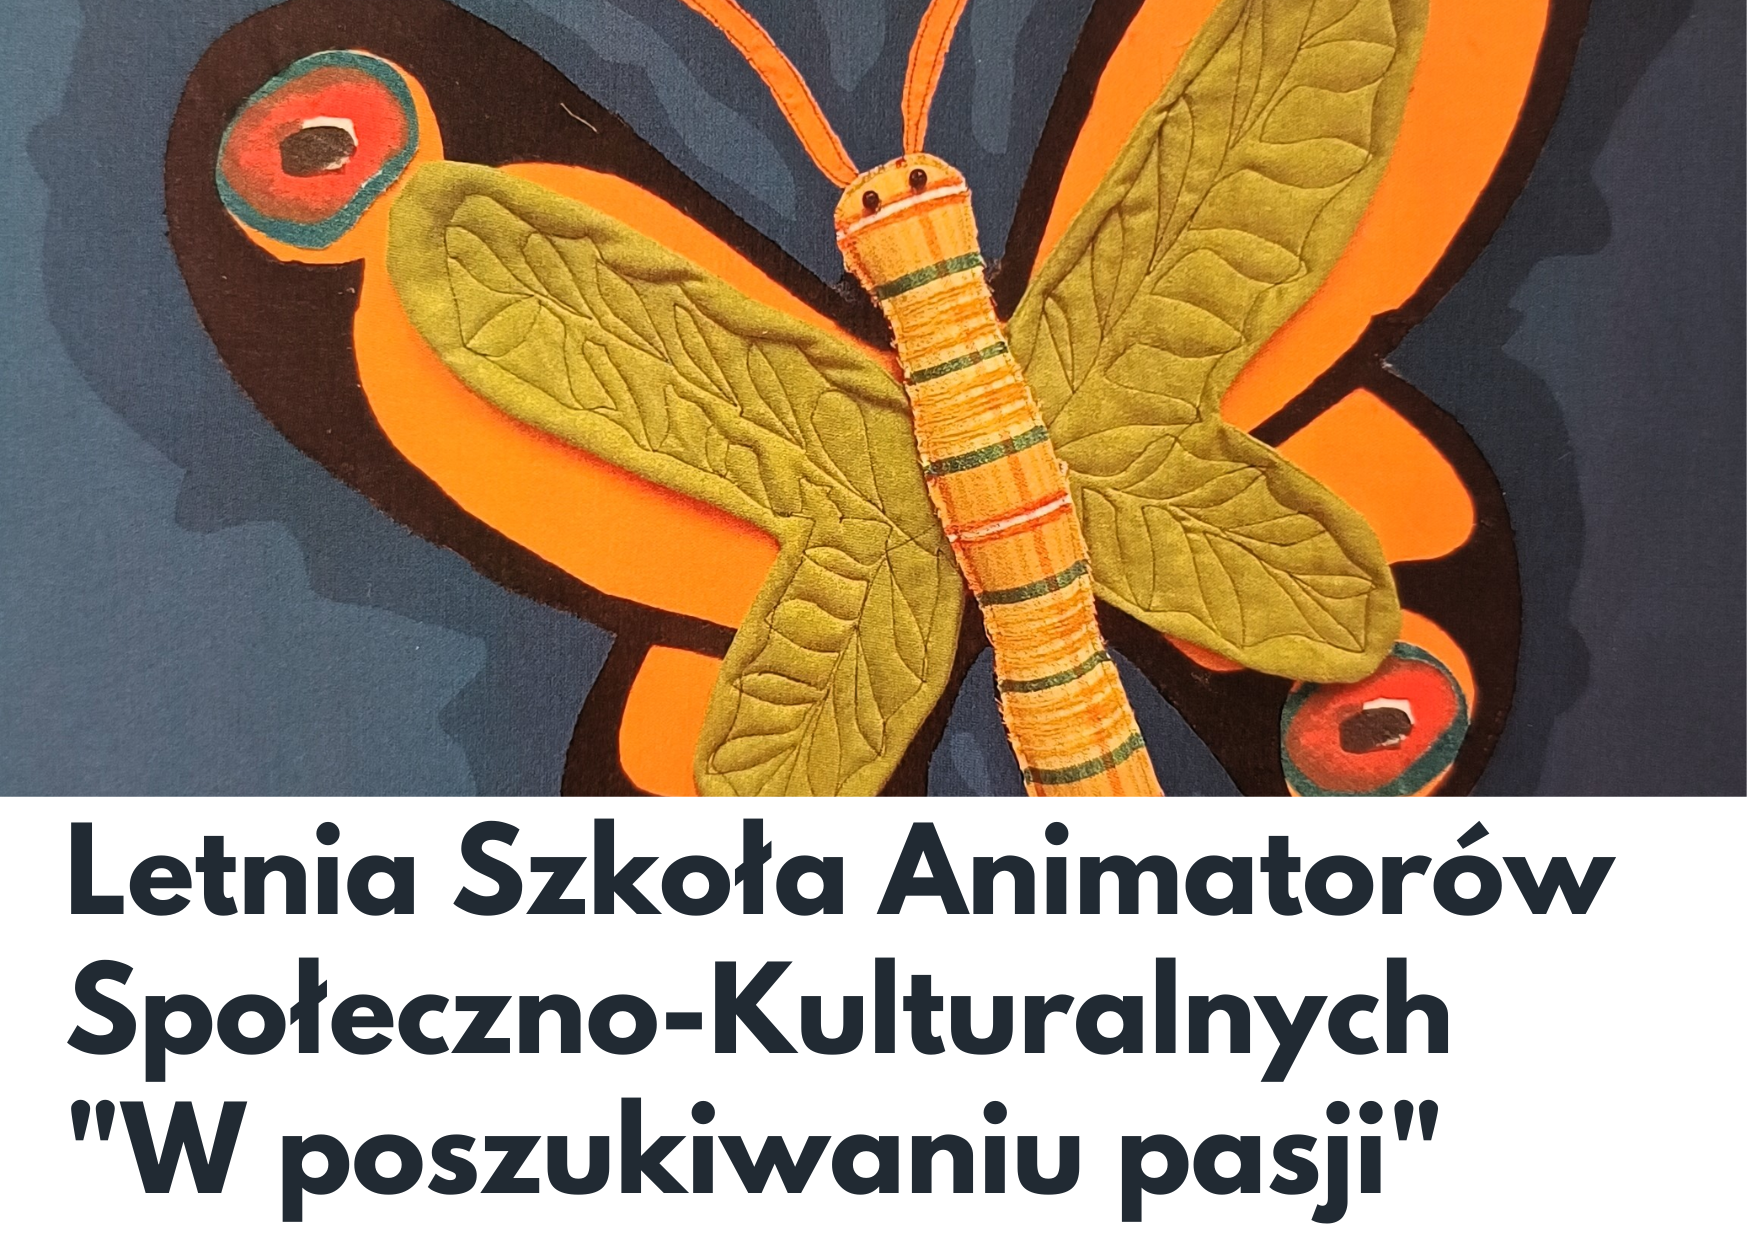 Letnia Szkoła Animatorów Społeczno-Kulturalnych "W poszukiwaniu pasji"